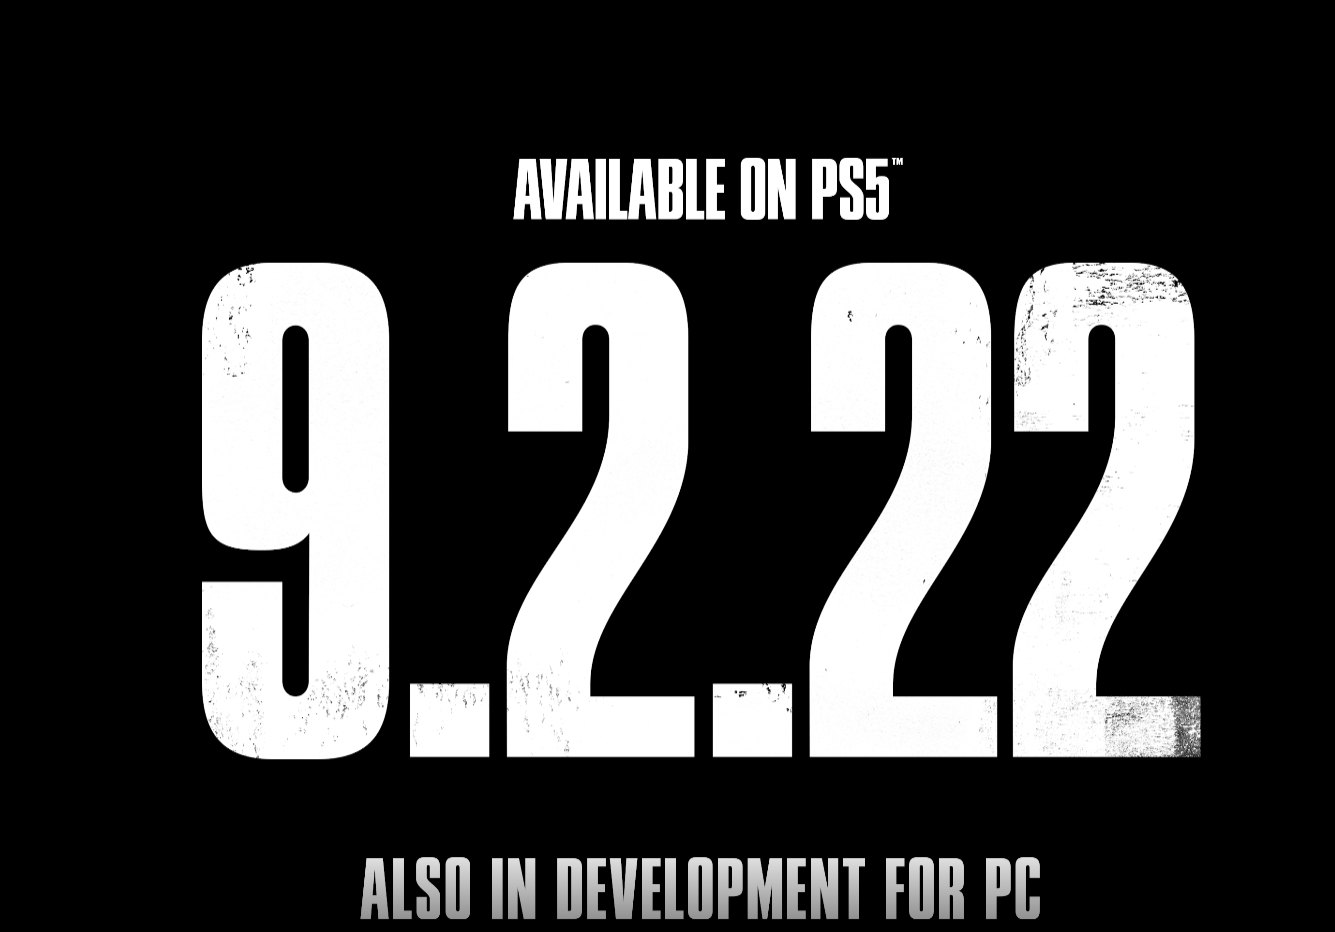 Ремейк The Last of Us Part I для PS5 выйдет в сентябре, также в разработке находится версия для ПК